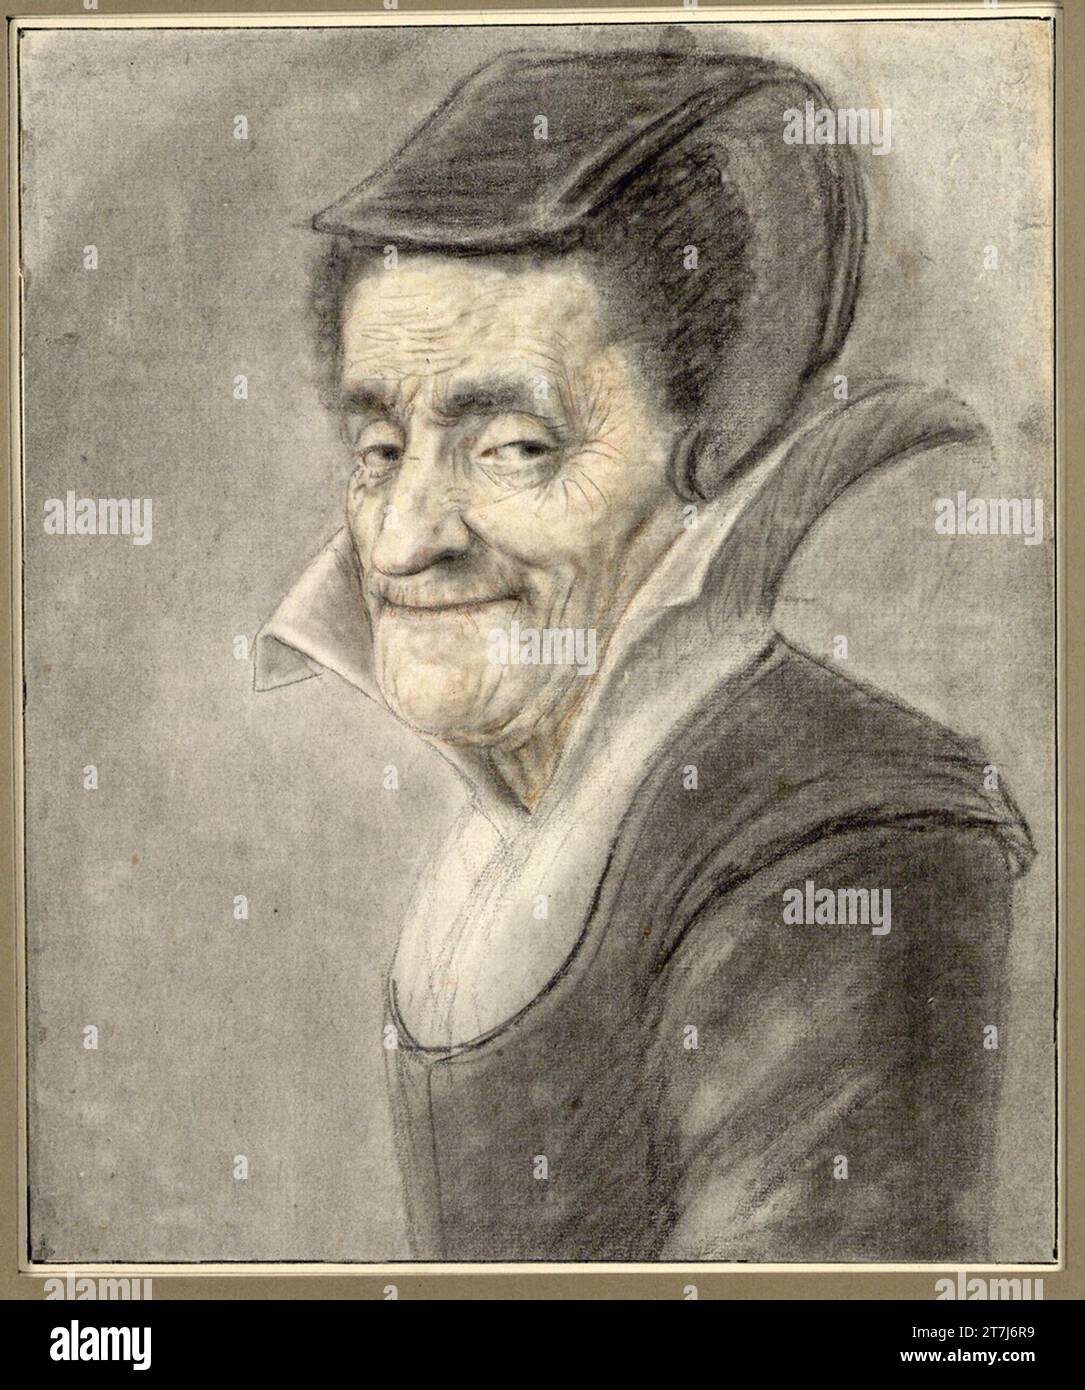 Nicolas Lagneau Portrait d'une vieille femme souriante espiègle avec un col haut debout et une capuche ouverte, buste, profil trois quarts à gauche. Craie de pierre, charbon, essuyé, rougeâtre, pastel Banque D'Images